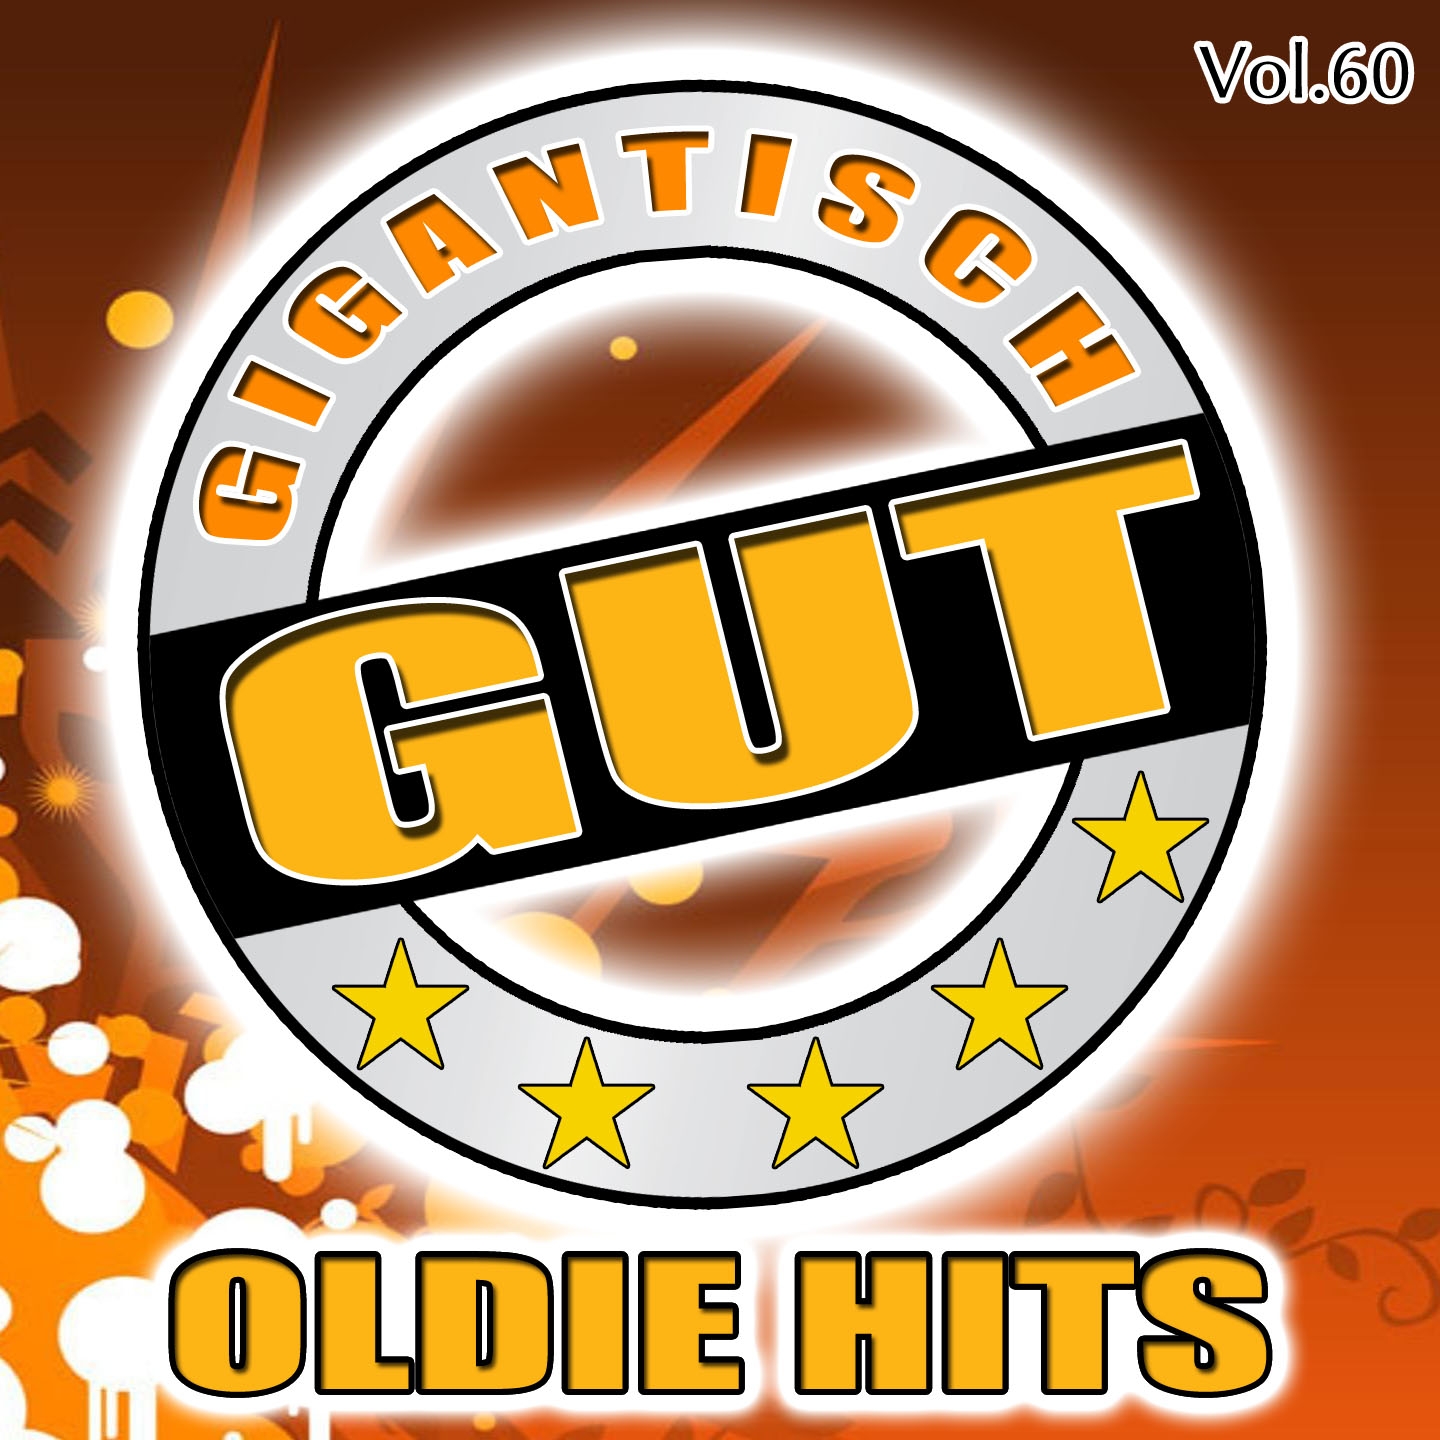 Gigantisch Gut: Oldie Hits, Vol. 60